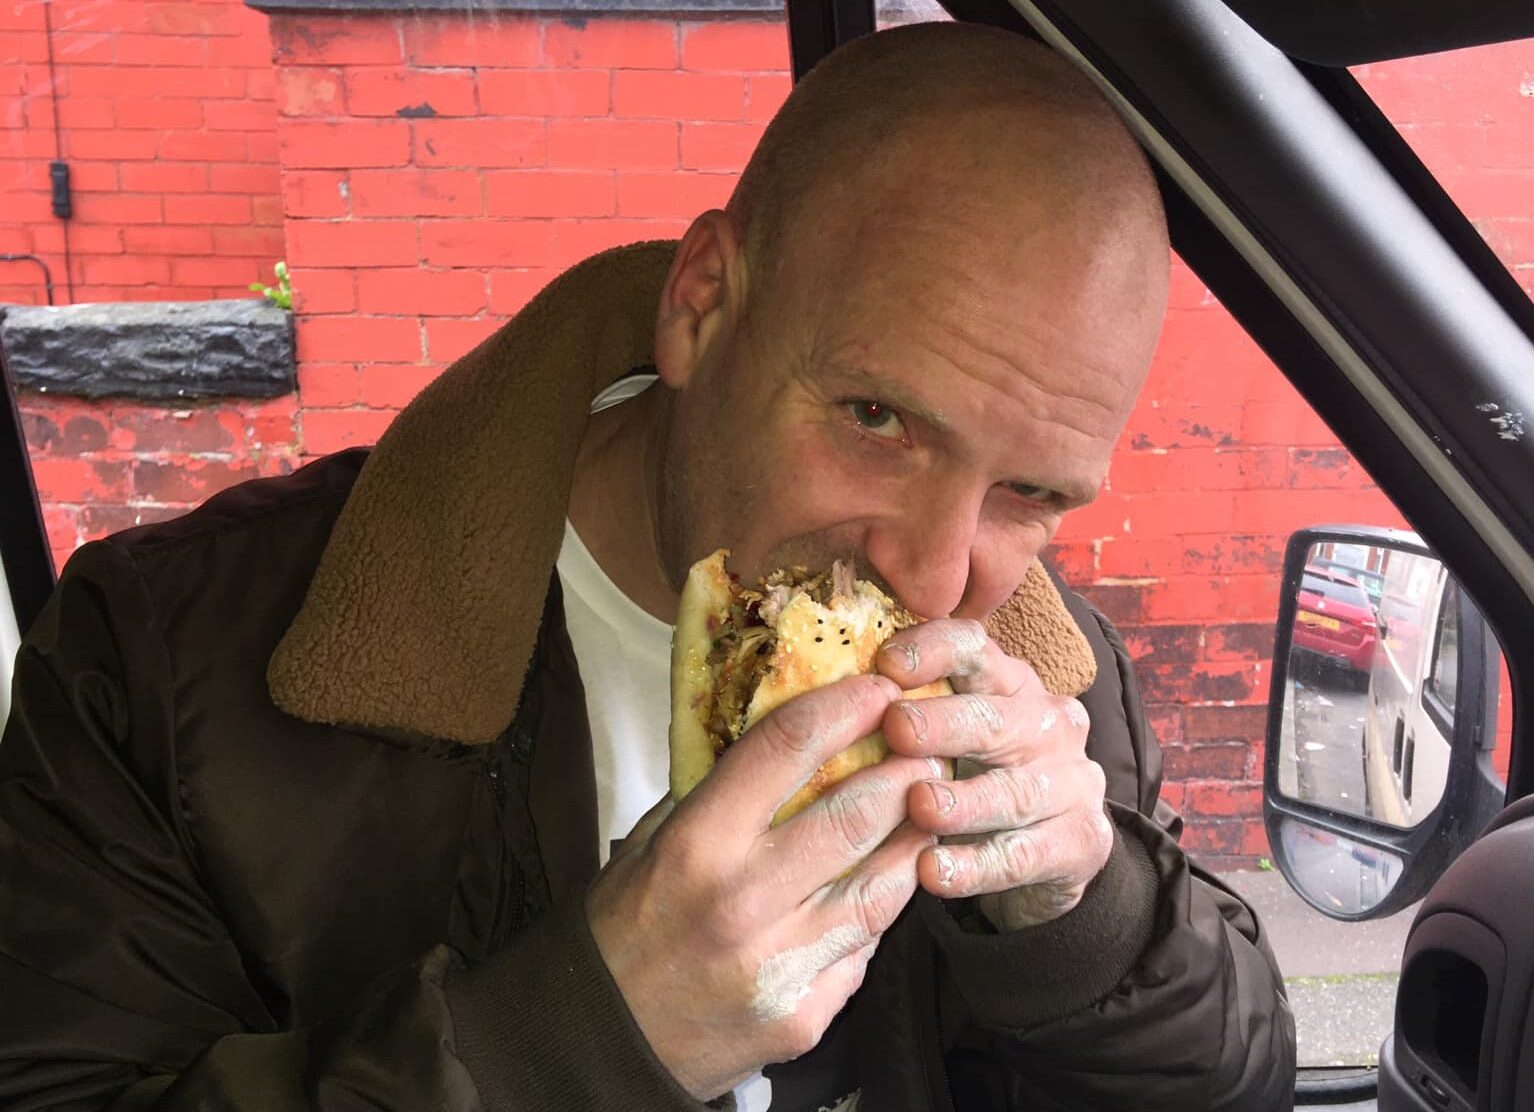 Man eating kebab in a van